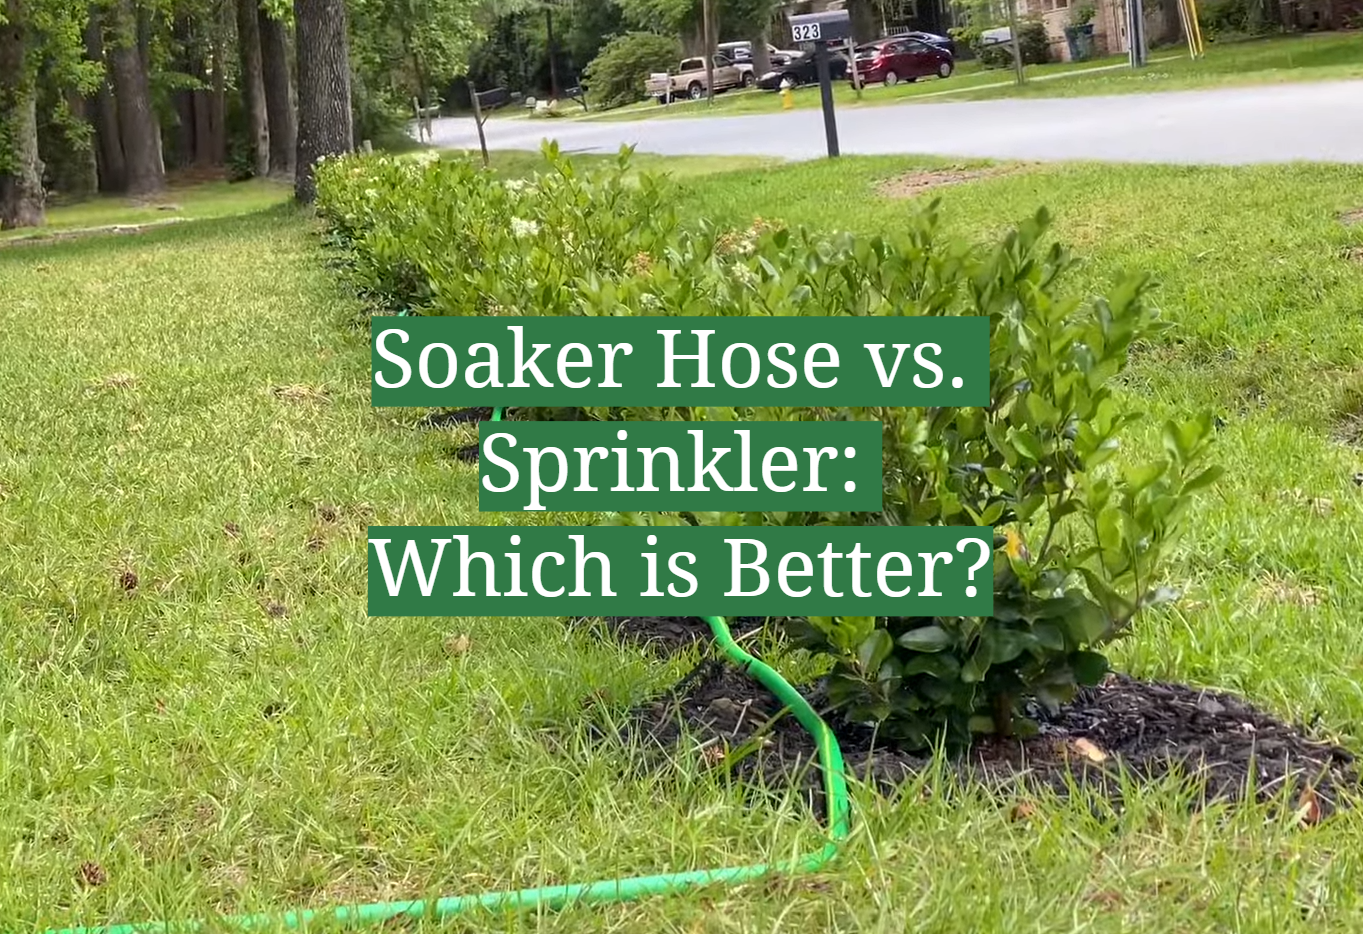 Soaker Hose vs. Sprinkler: Which is Better?